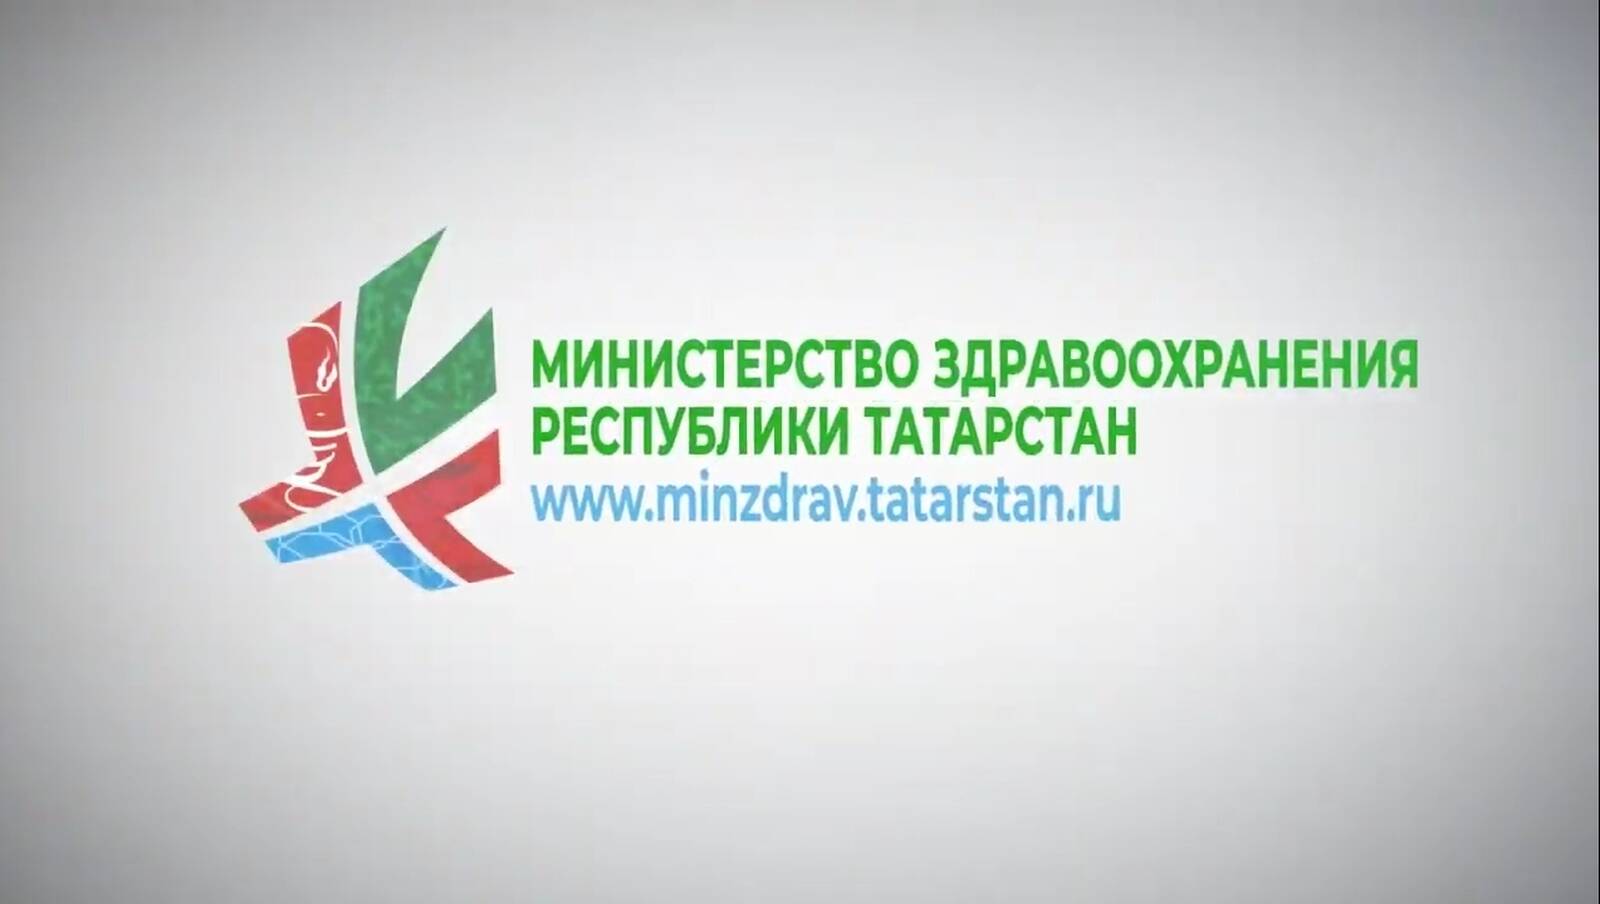 Эмблема Министерства здравоохранения РТ. Минздрав РТ. Минкульт РТ логотип. Логотип МЗ РТ на прозрачном фоне.